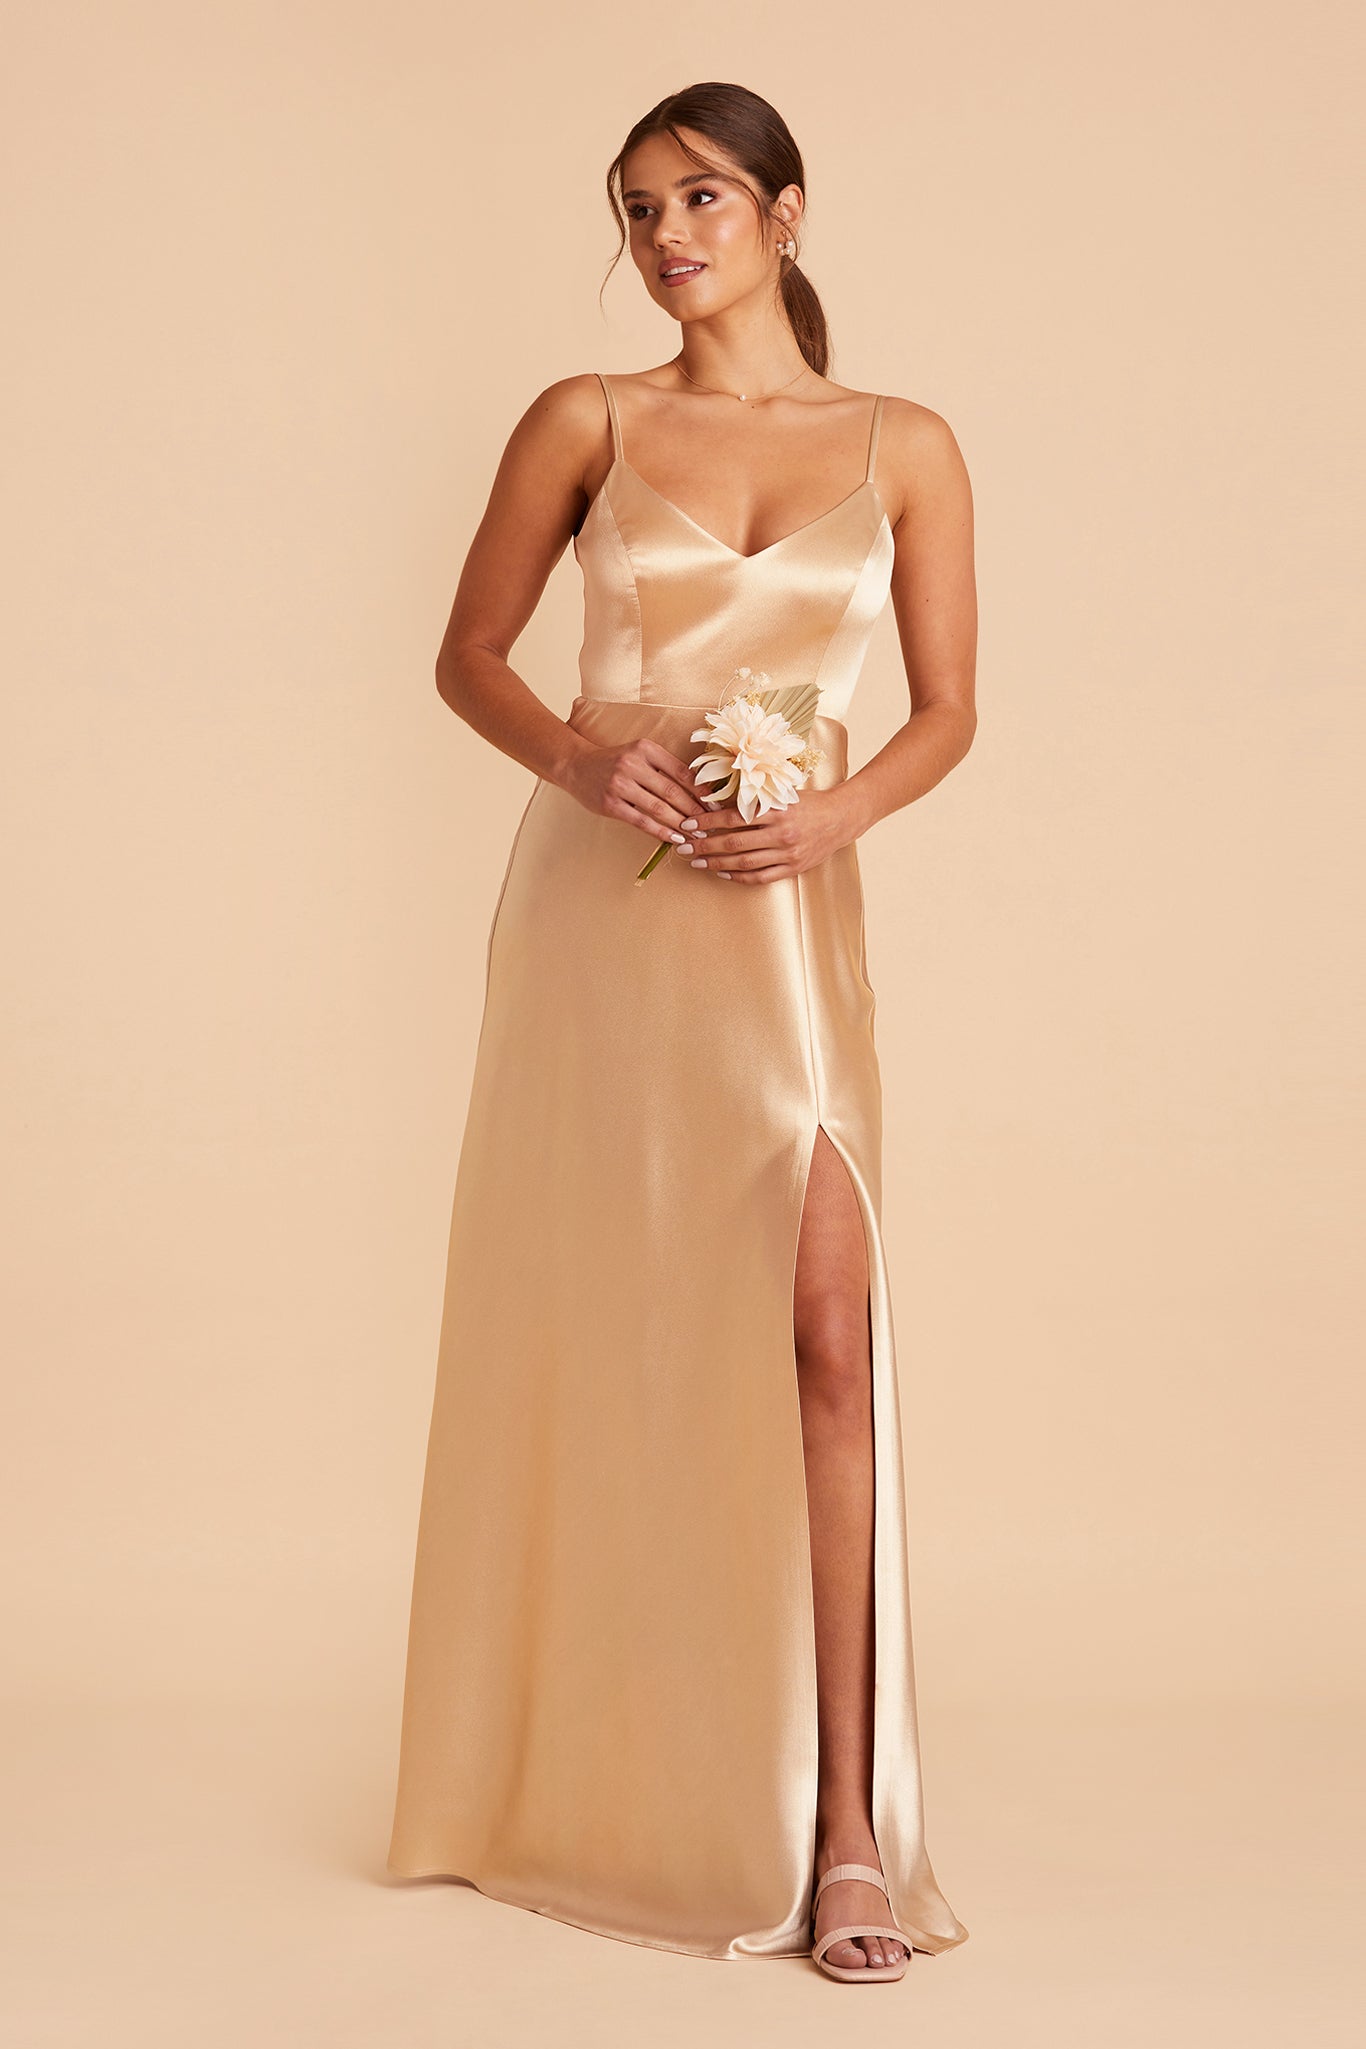 Gold Jay Shiny Satin Dress by Birdy Grey